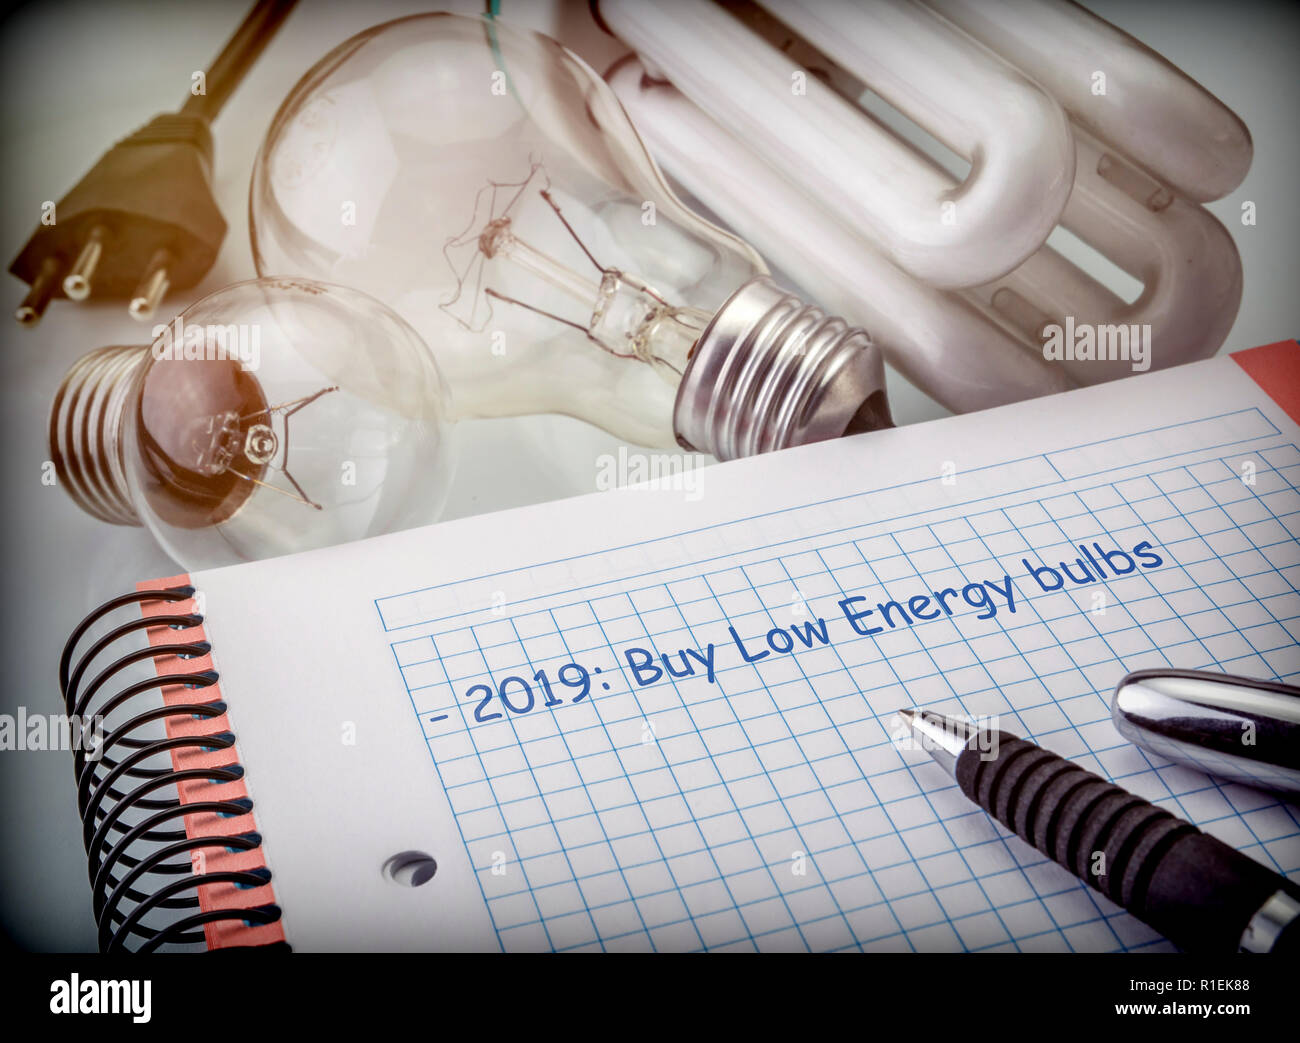 Objetivos para guardar en el próximo año, reducir el consumo de energía, comprar bombillas de bajo consumo, imagen conceptual Foto de stock